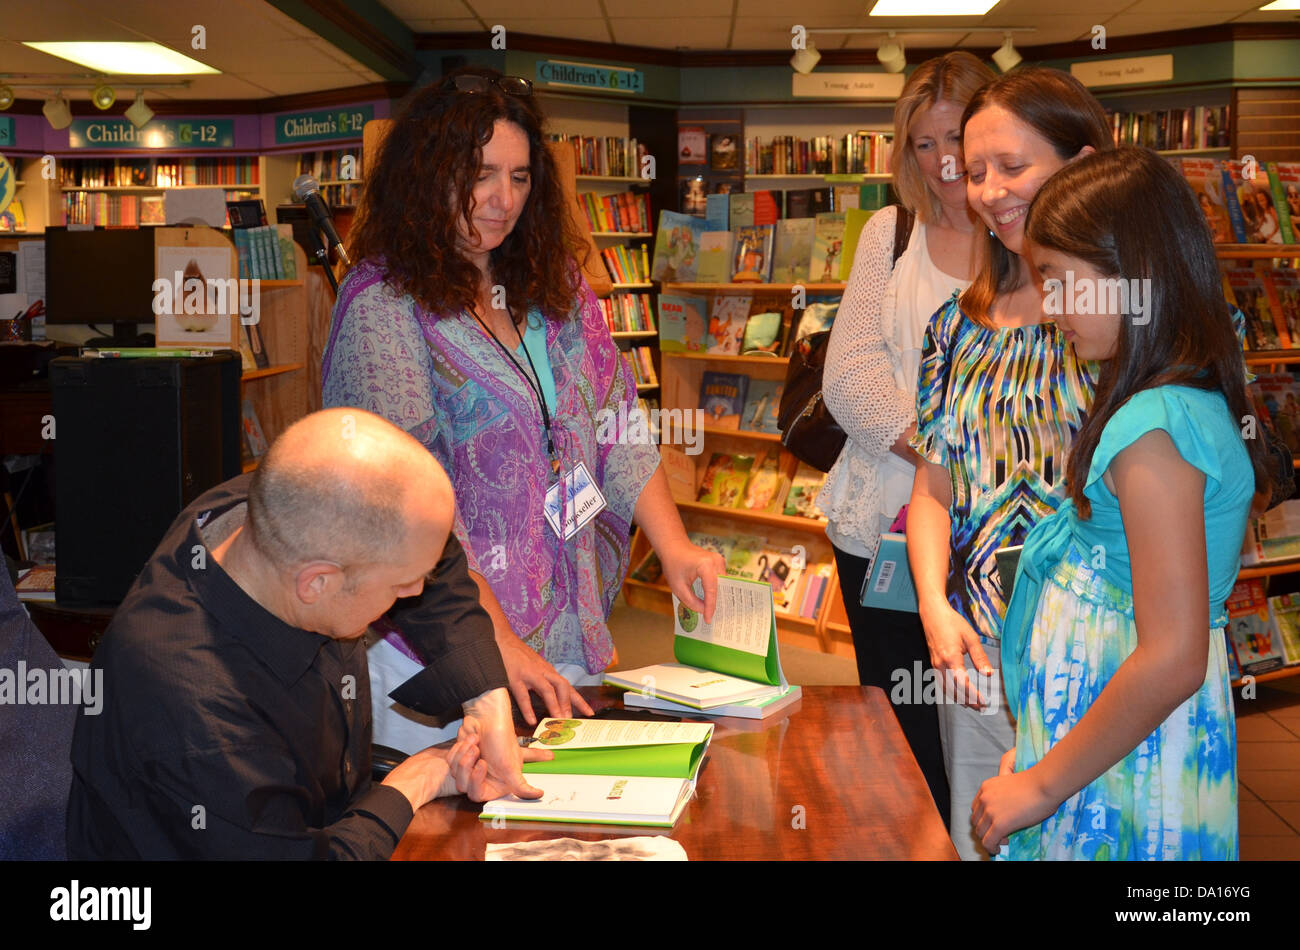 Jim Ottaviani Fingerabdrücke ein Buch zur Signierstunde für seine neue buchen "Primaten" bei Nicola es Books 25. Juni 2013 in Ann Arbor, MI Stockfoto